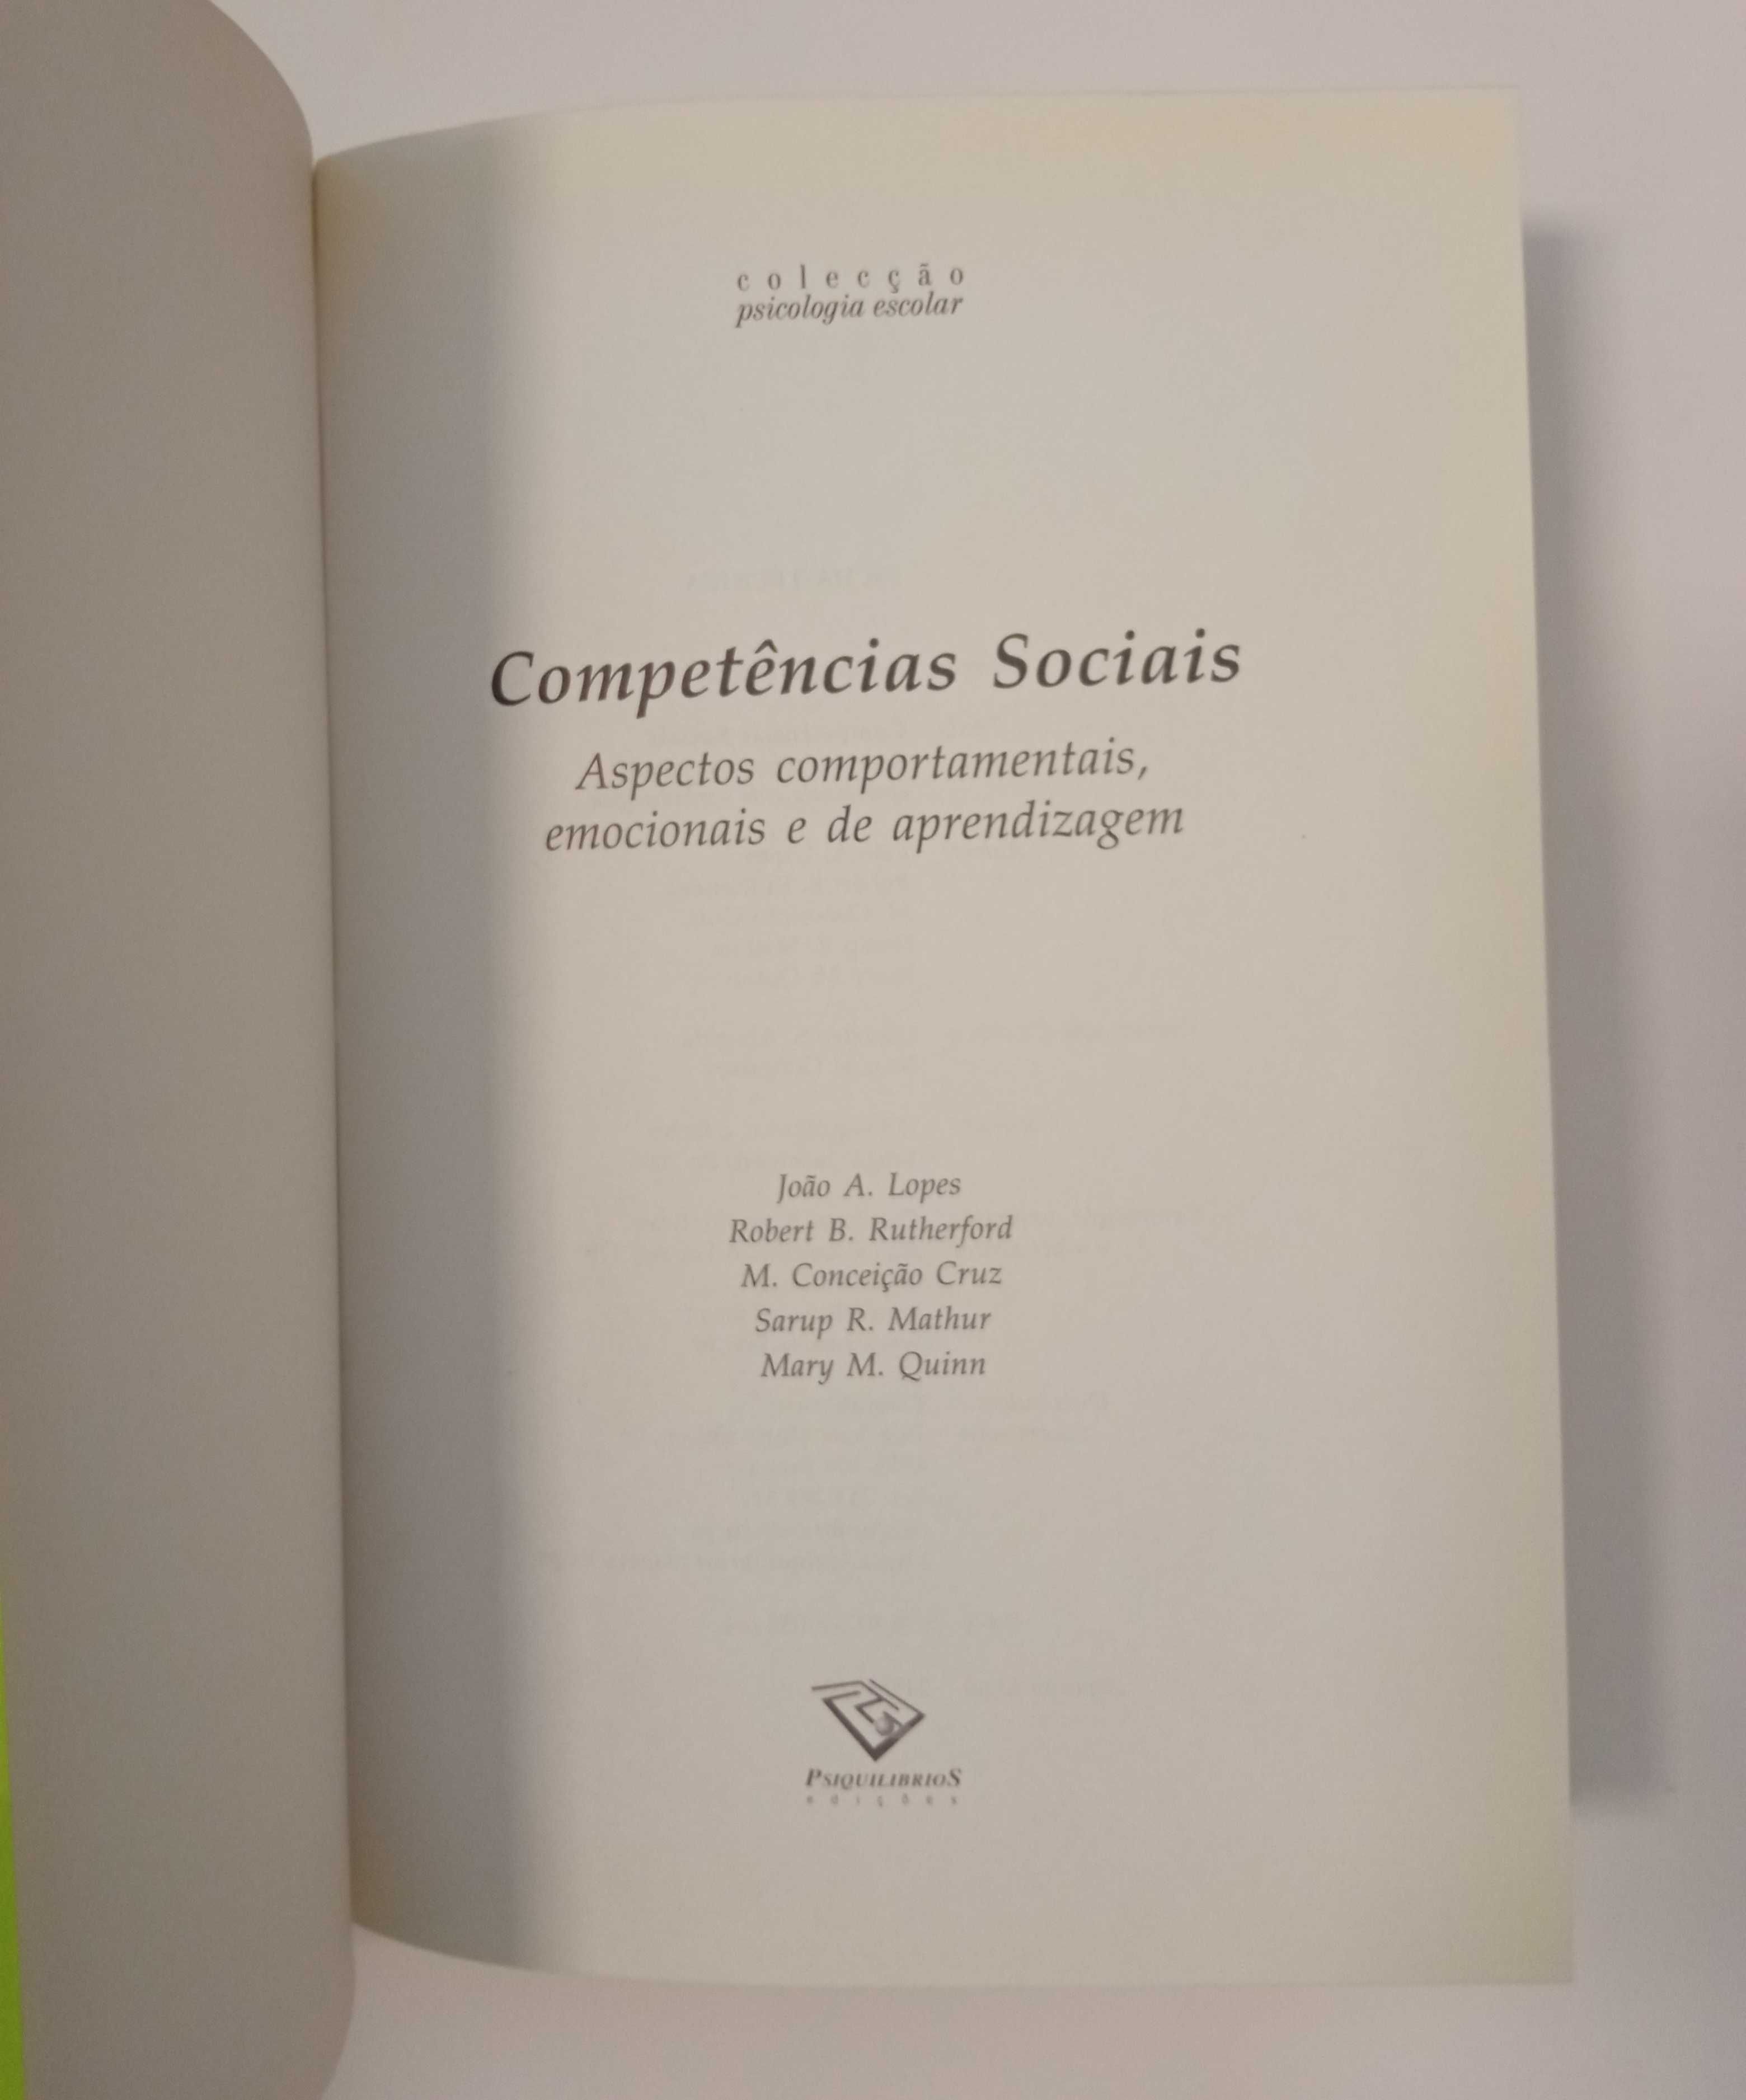 Competências Sociais, de João A. Lopes